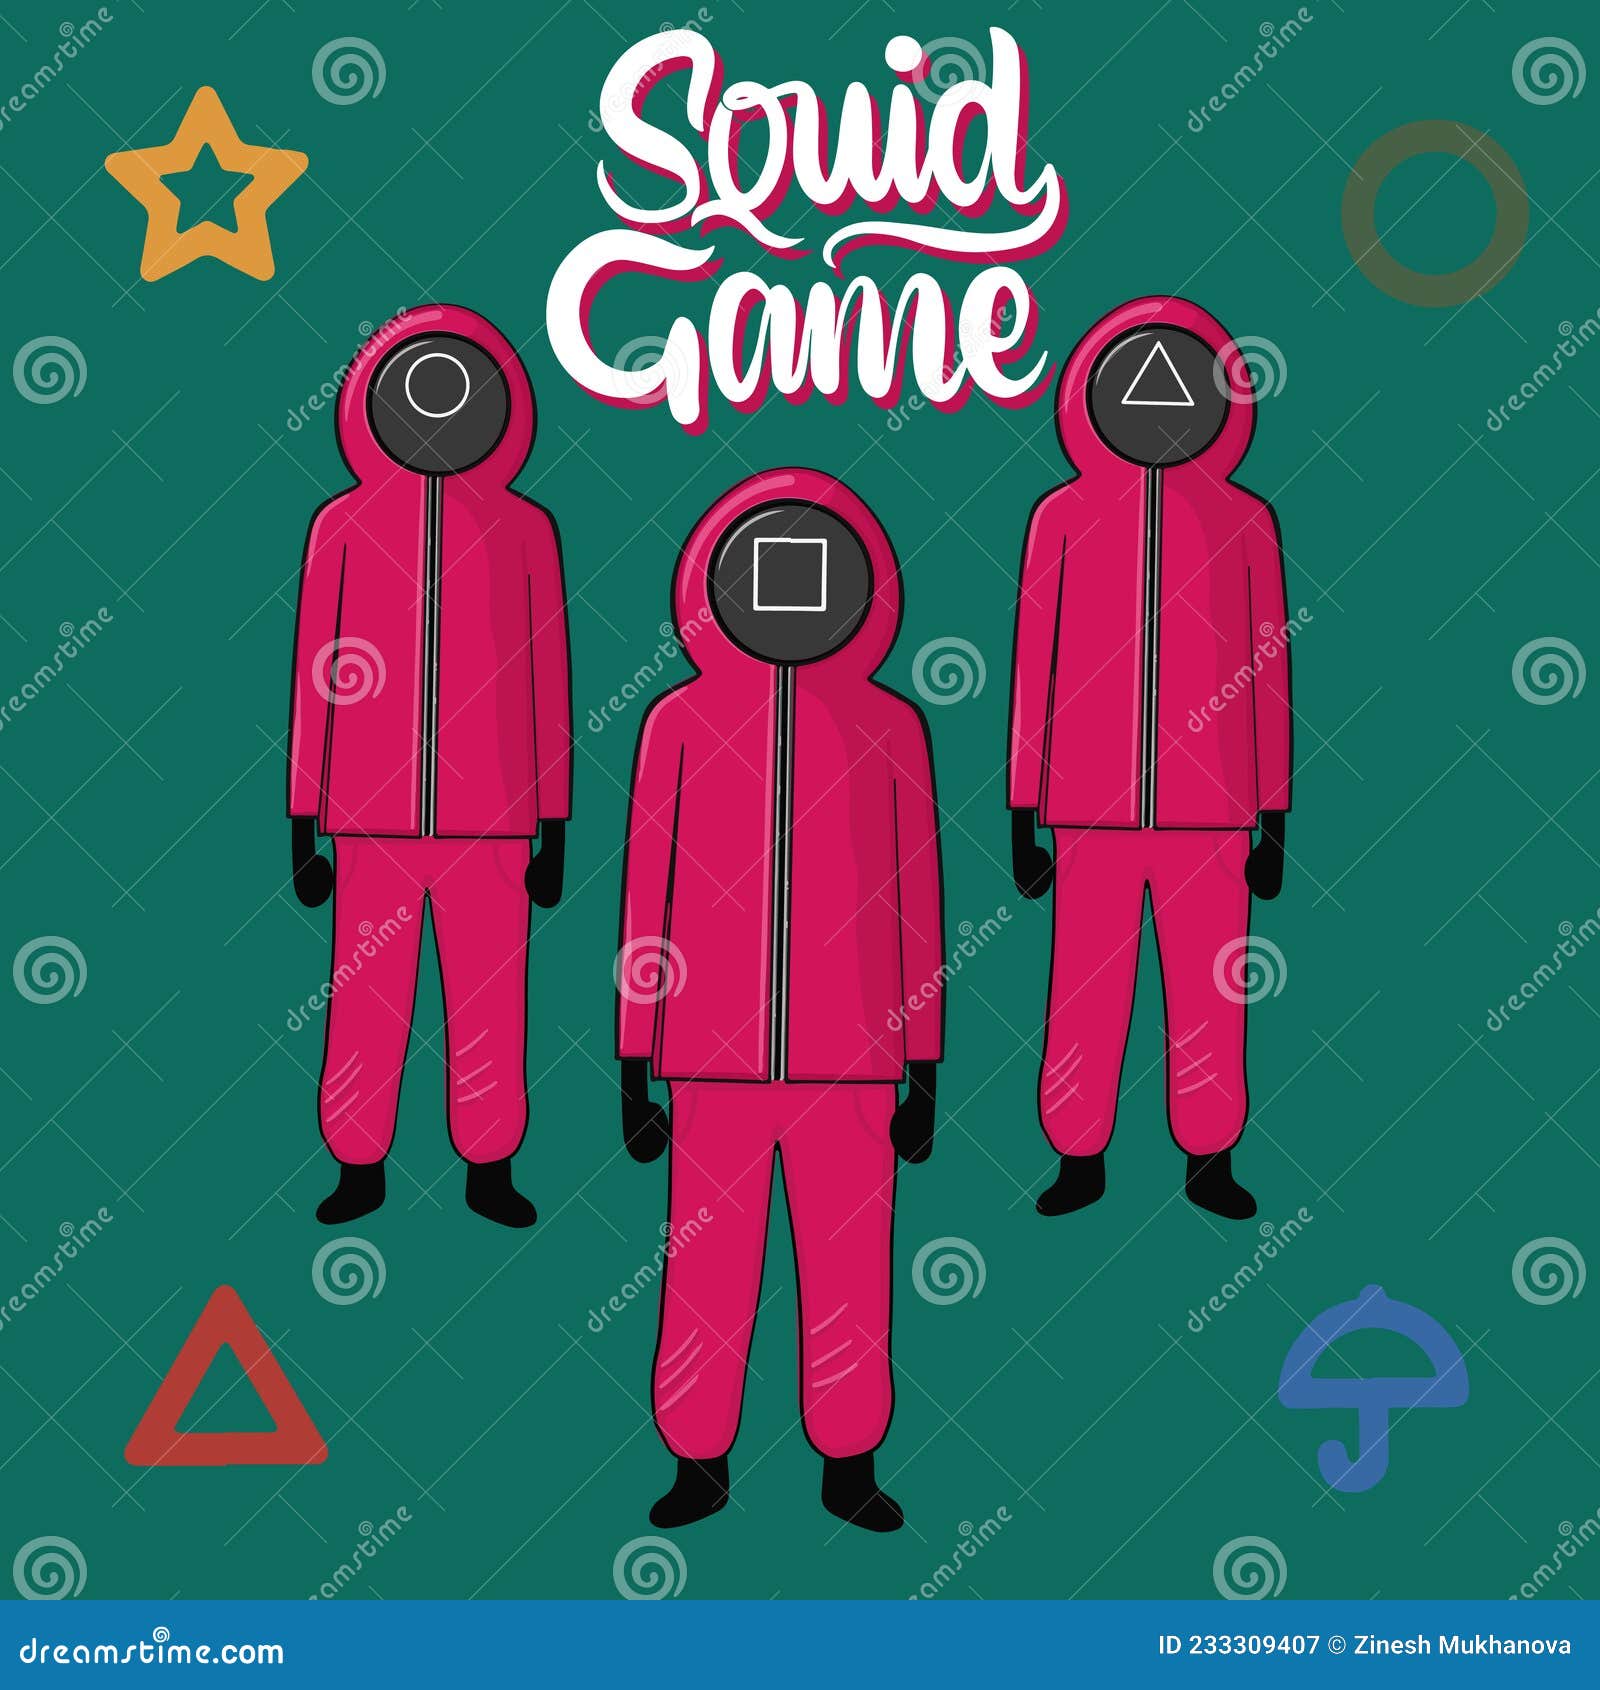 Squid game genre